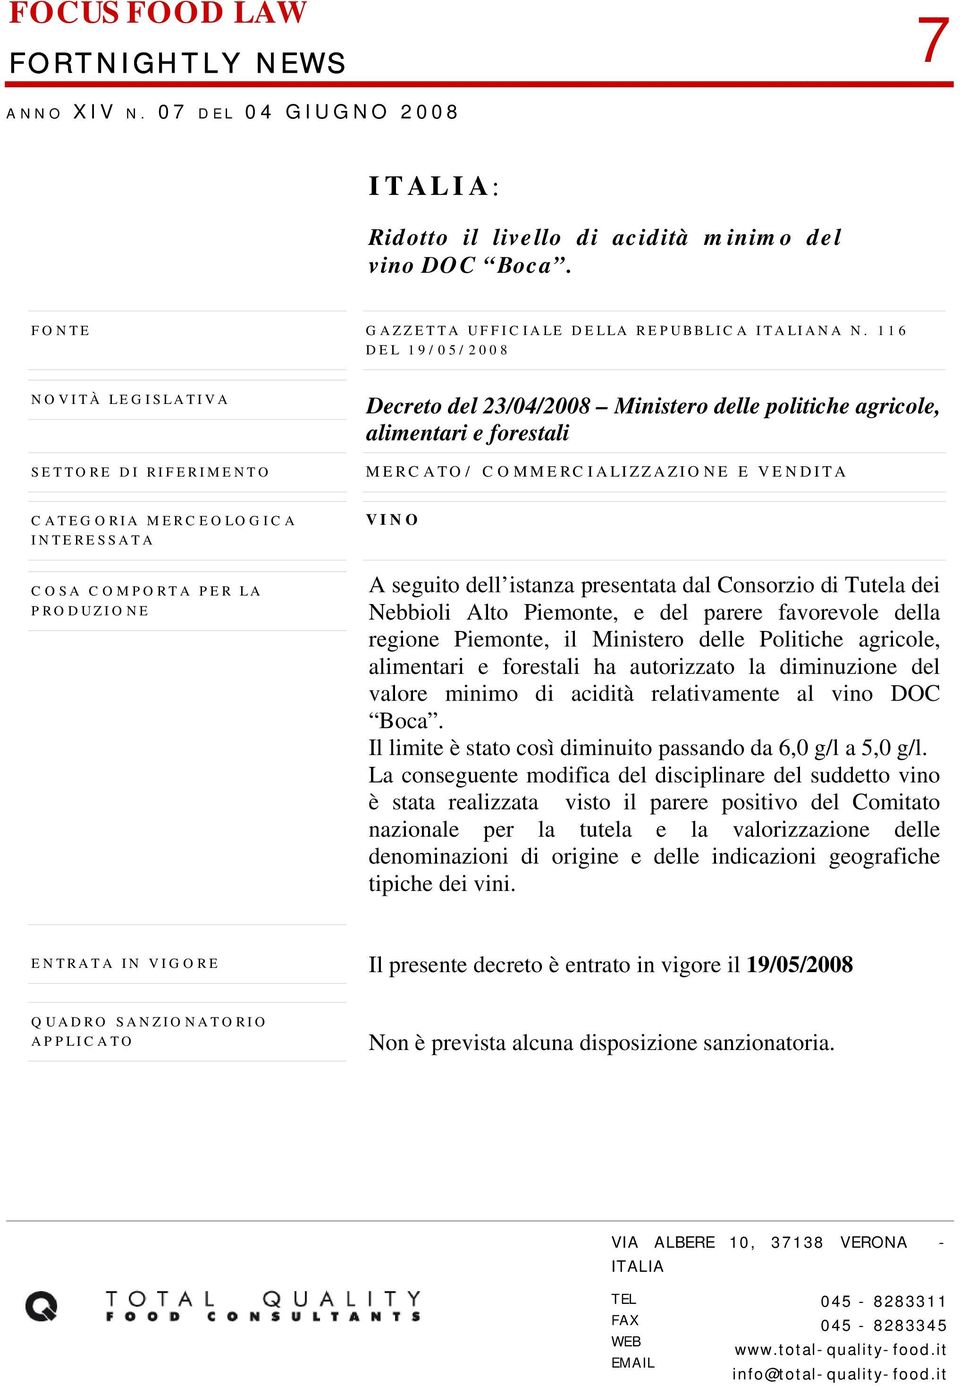 Consorzio di Tutela dei Nebbioli Alto Piemonte, e del parere favorevole della regione Piemonte, il Ministero delle Politiche agricole, alimentari e forestali ha autorizzato la diminuzione del valore